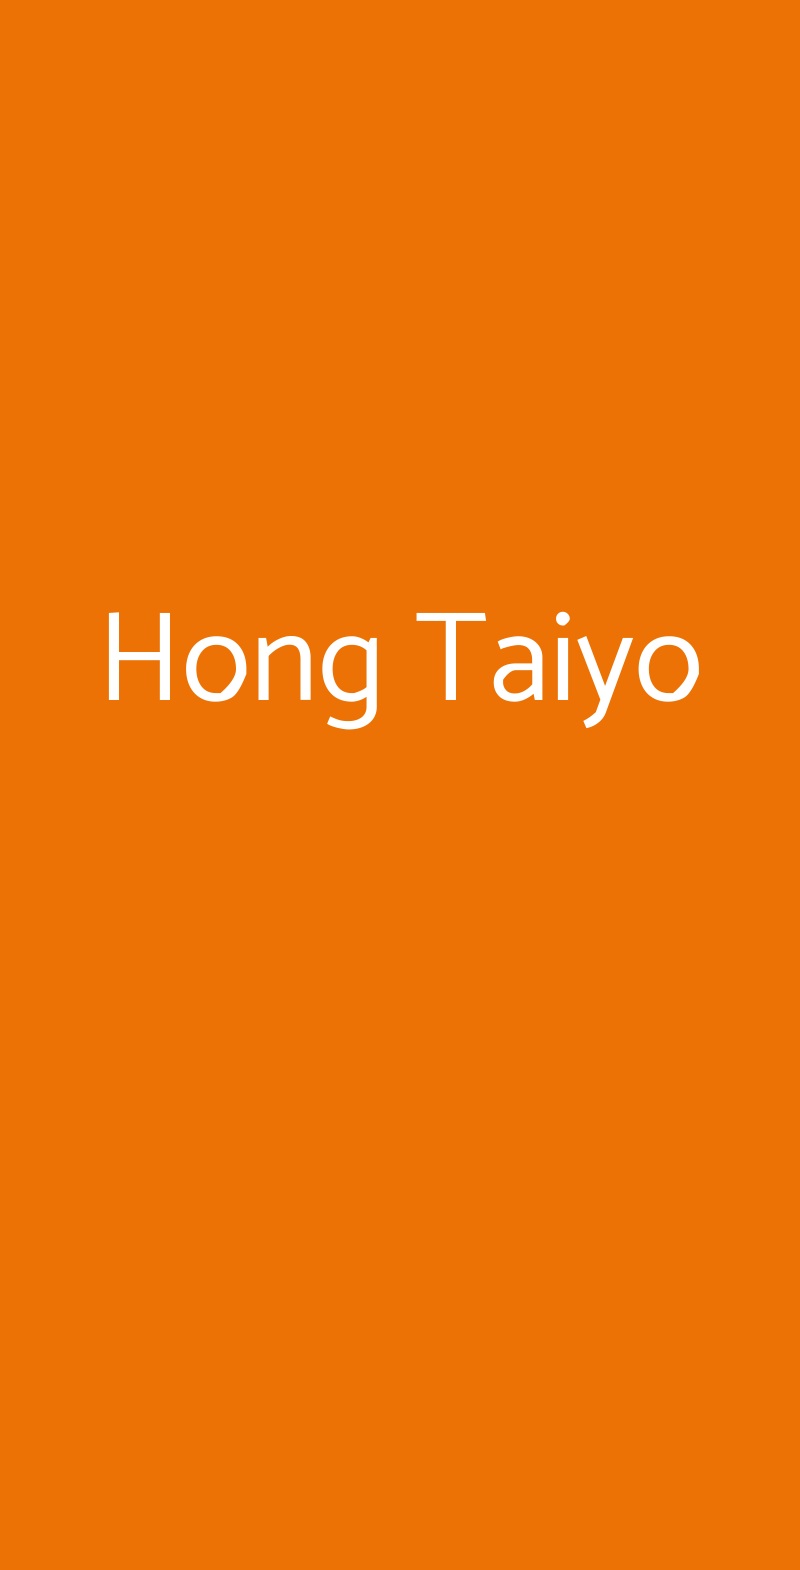 Hong Taiyo Milano menù 1 pagina